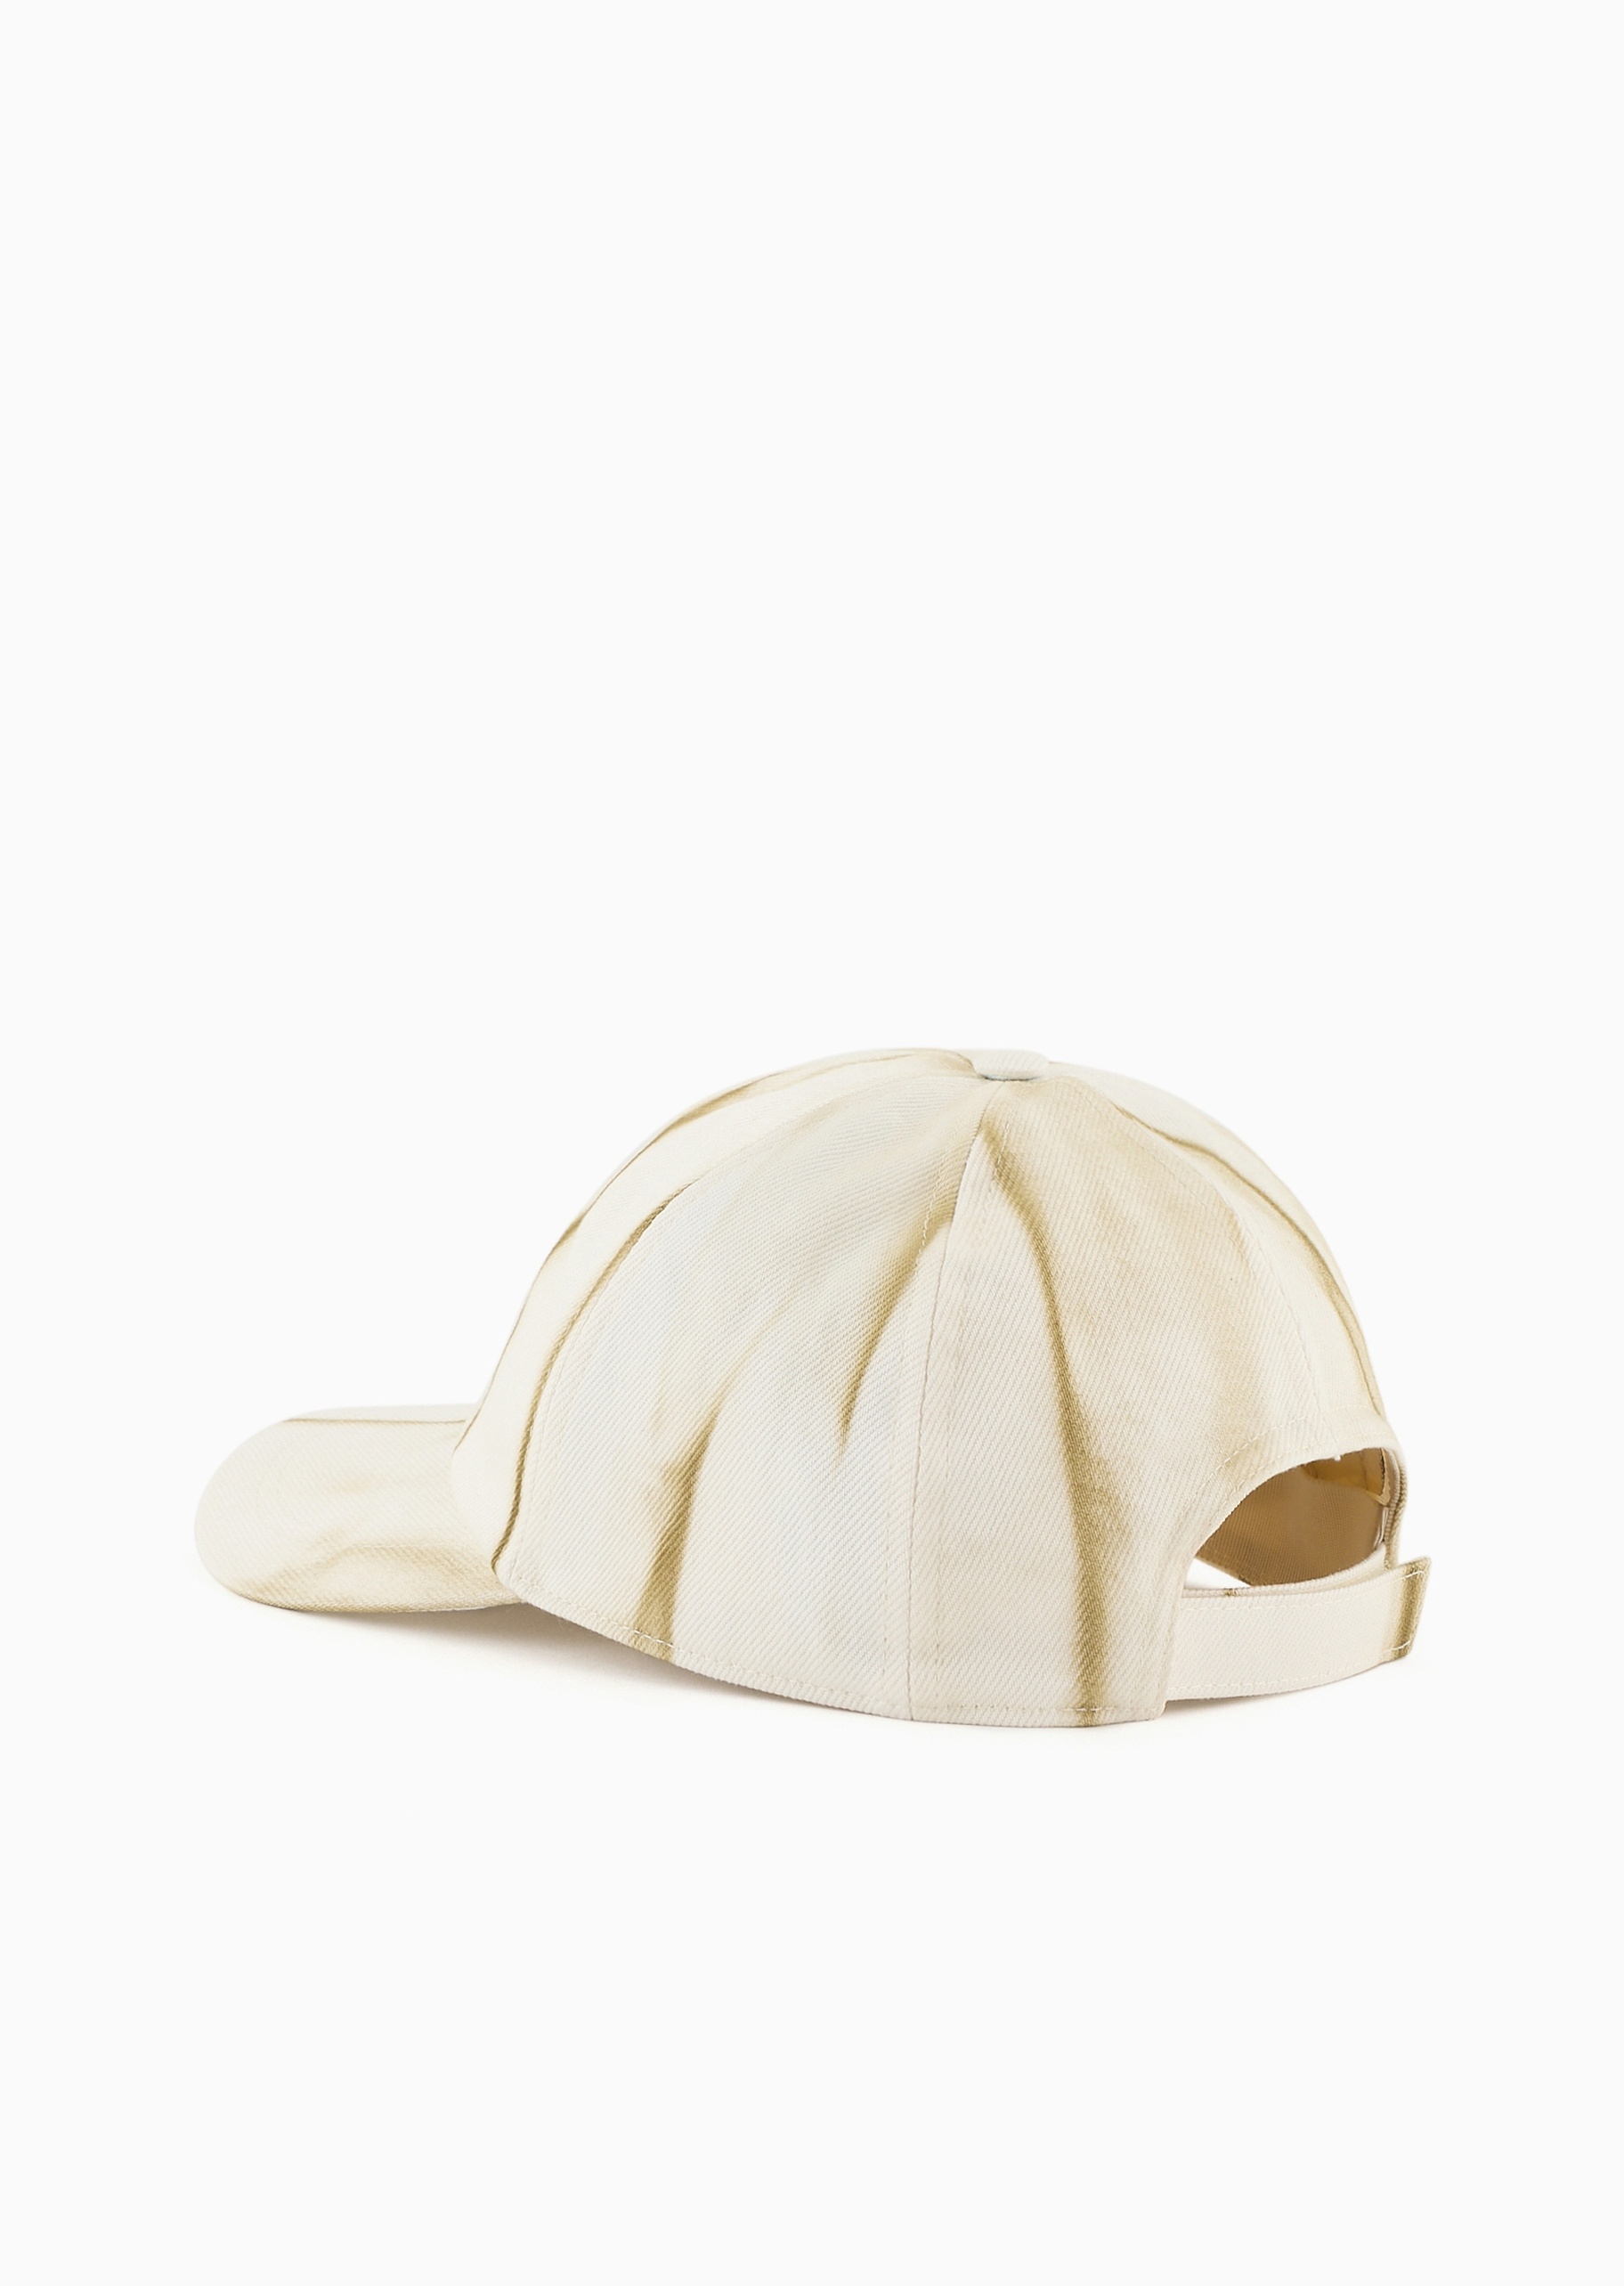 Emporio Armani 可持续系列男士全棉魔术贴圆顶弯檐棒球帽